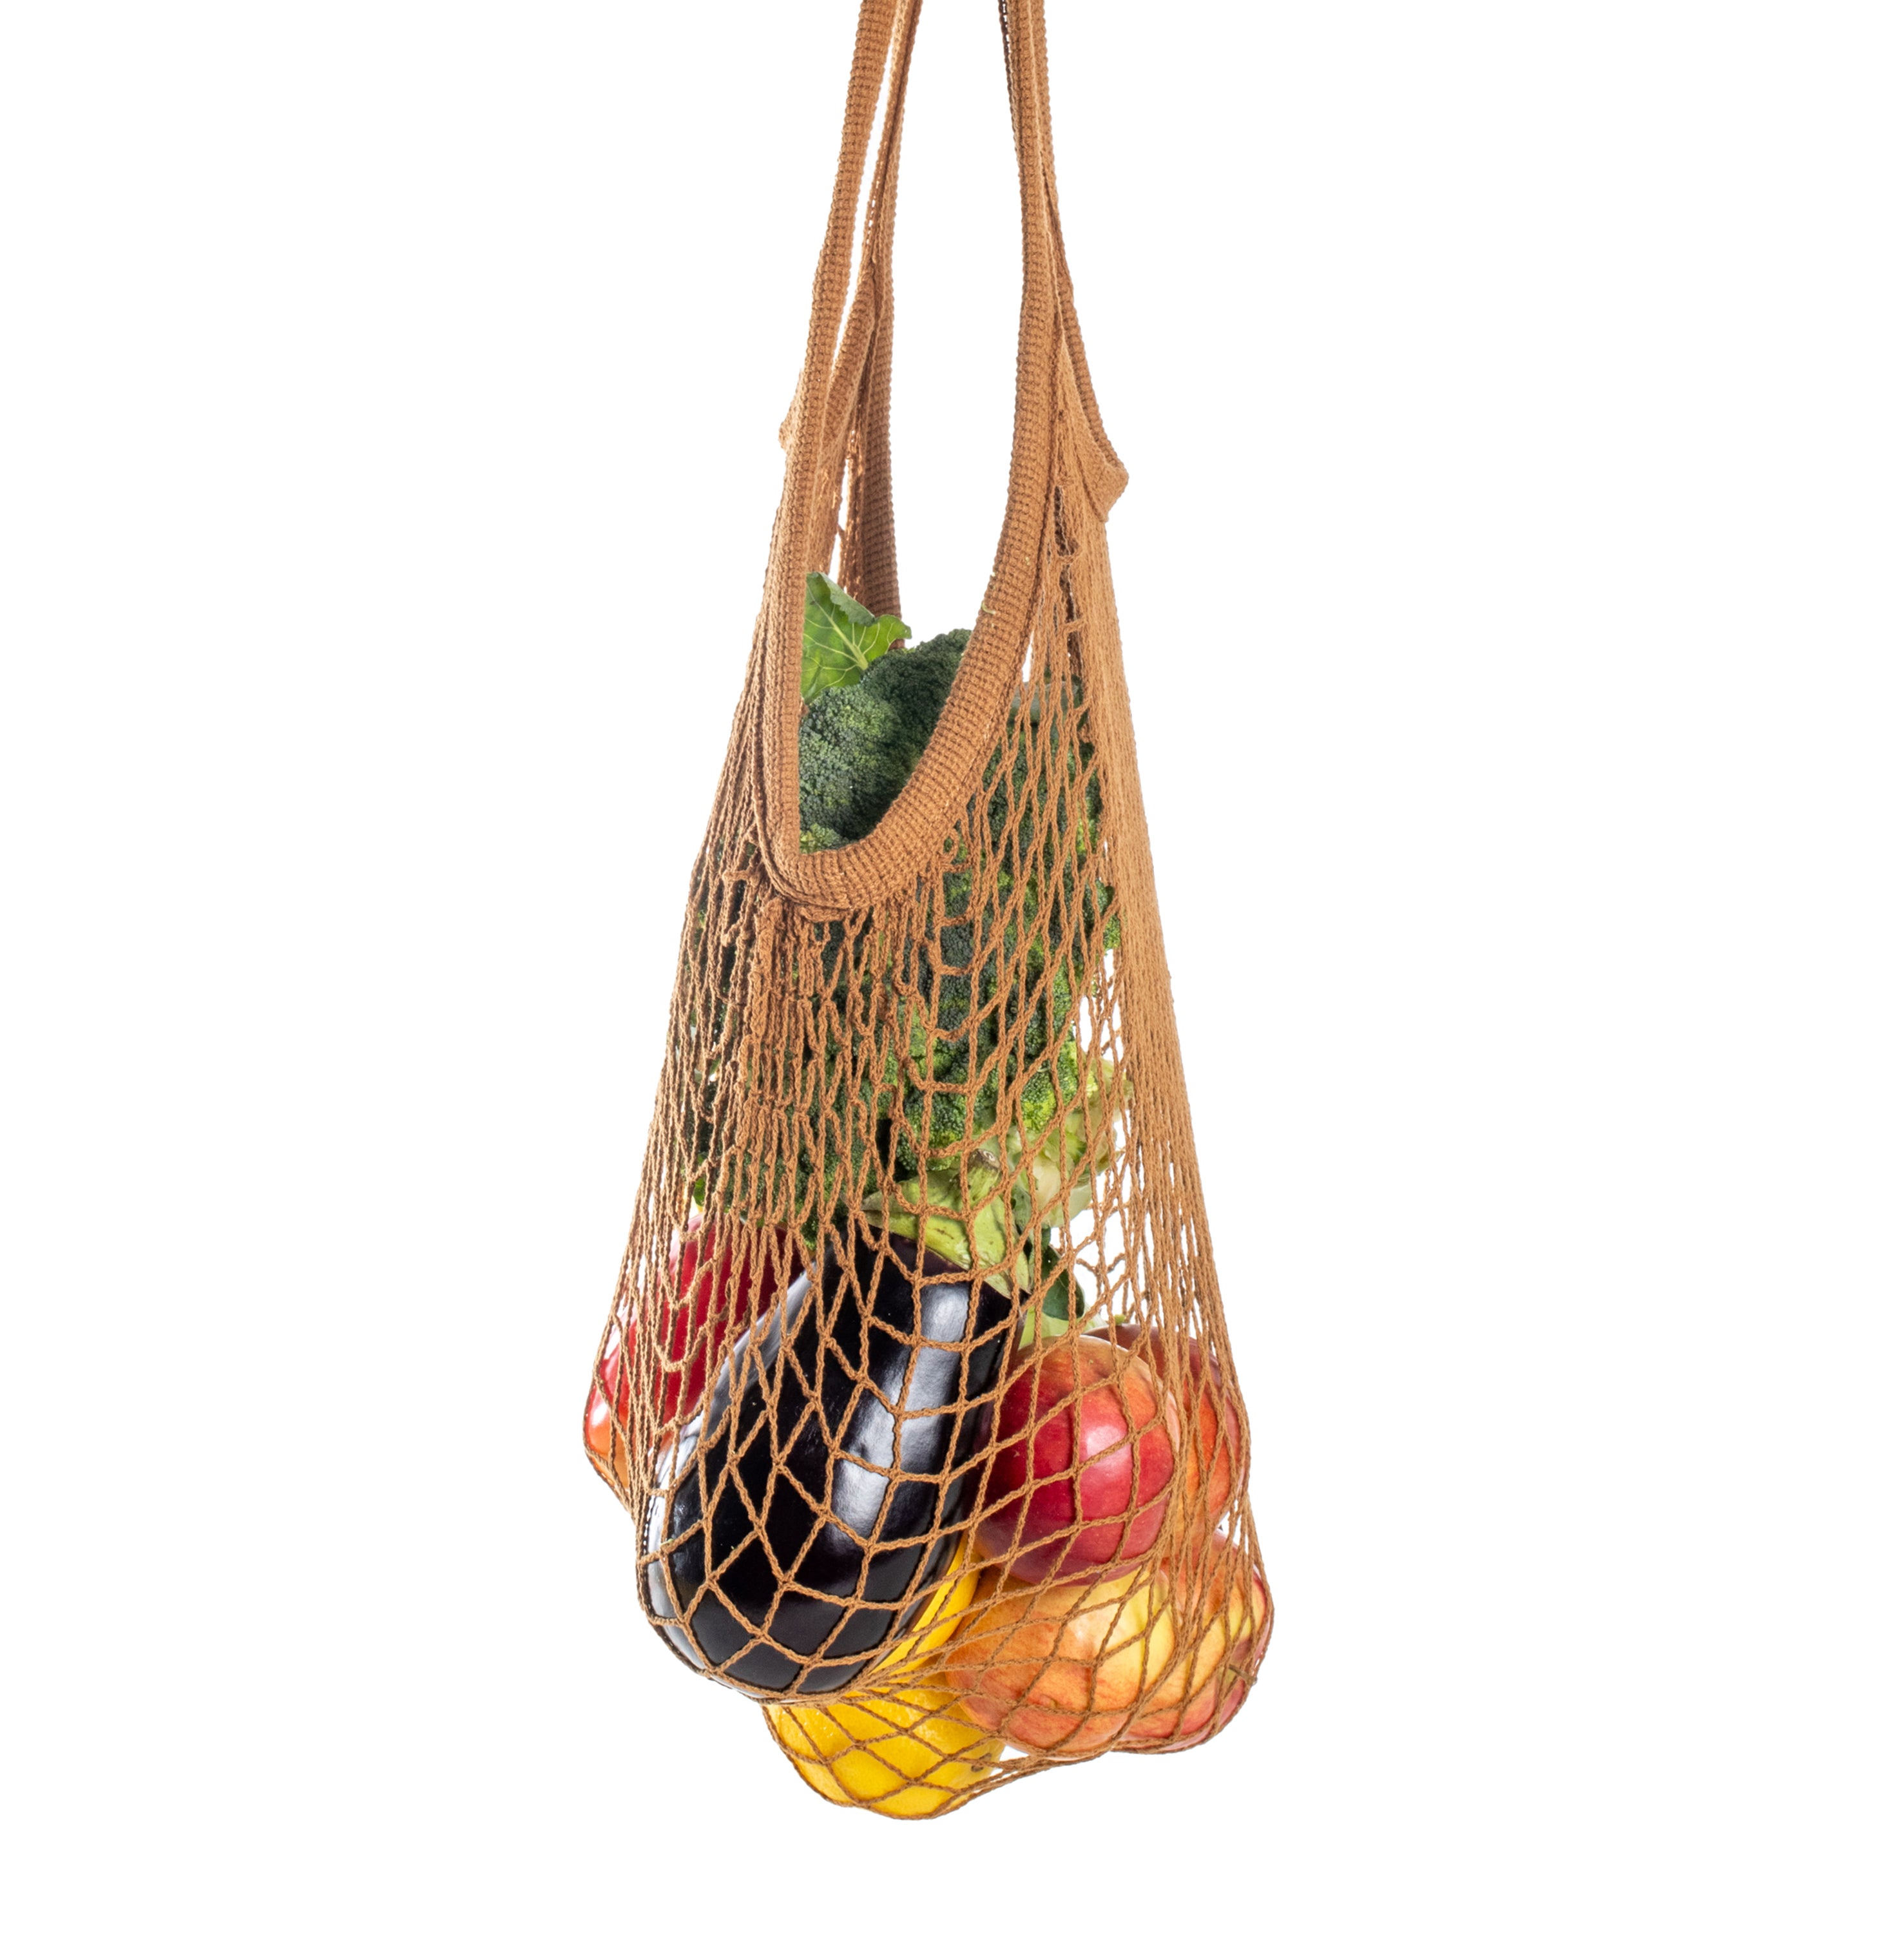 Rezginė sietka pirkinių krepšys rudos spalvos, su vaisiais viduje, dovanų idėjos, mados aksesuarai moterims